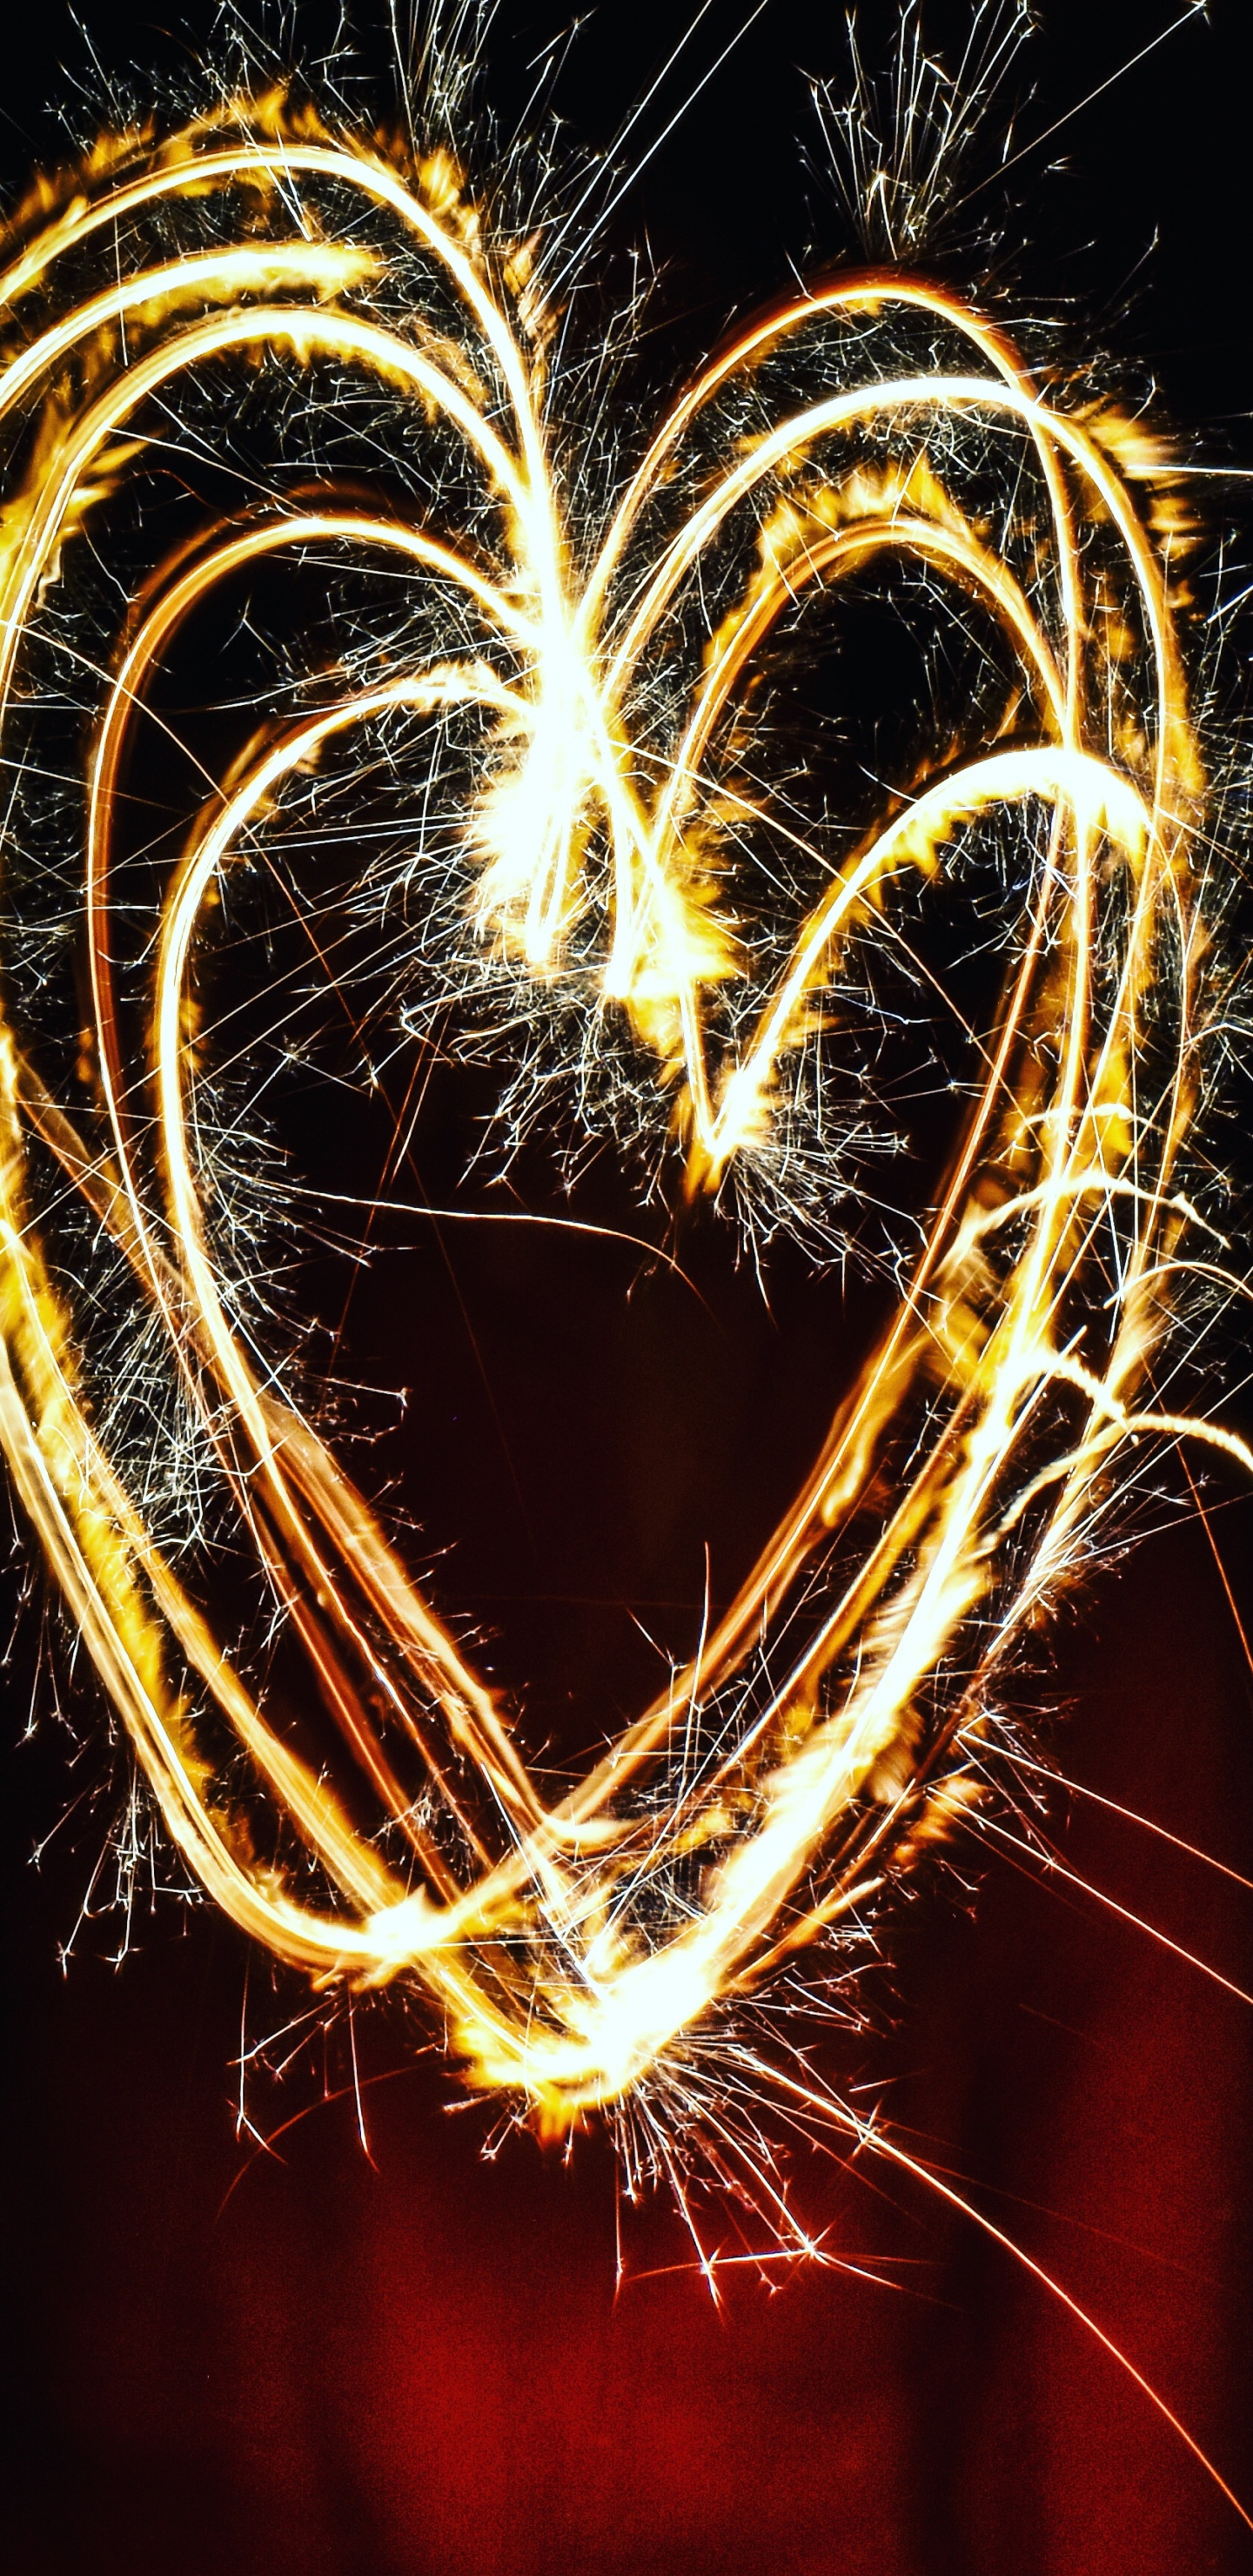 Sparkler, Fireworks, Heart, Light, Love. Wallpaper in 1440x2960 Resolution